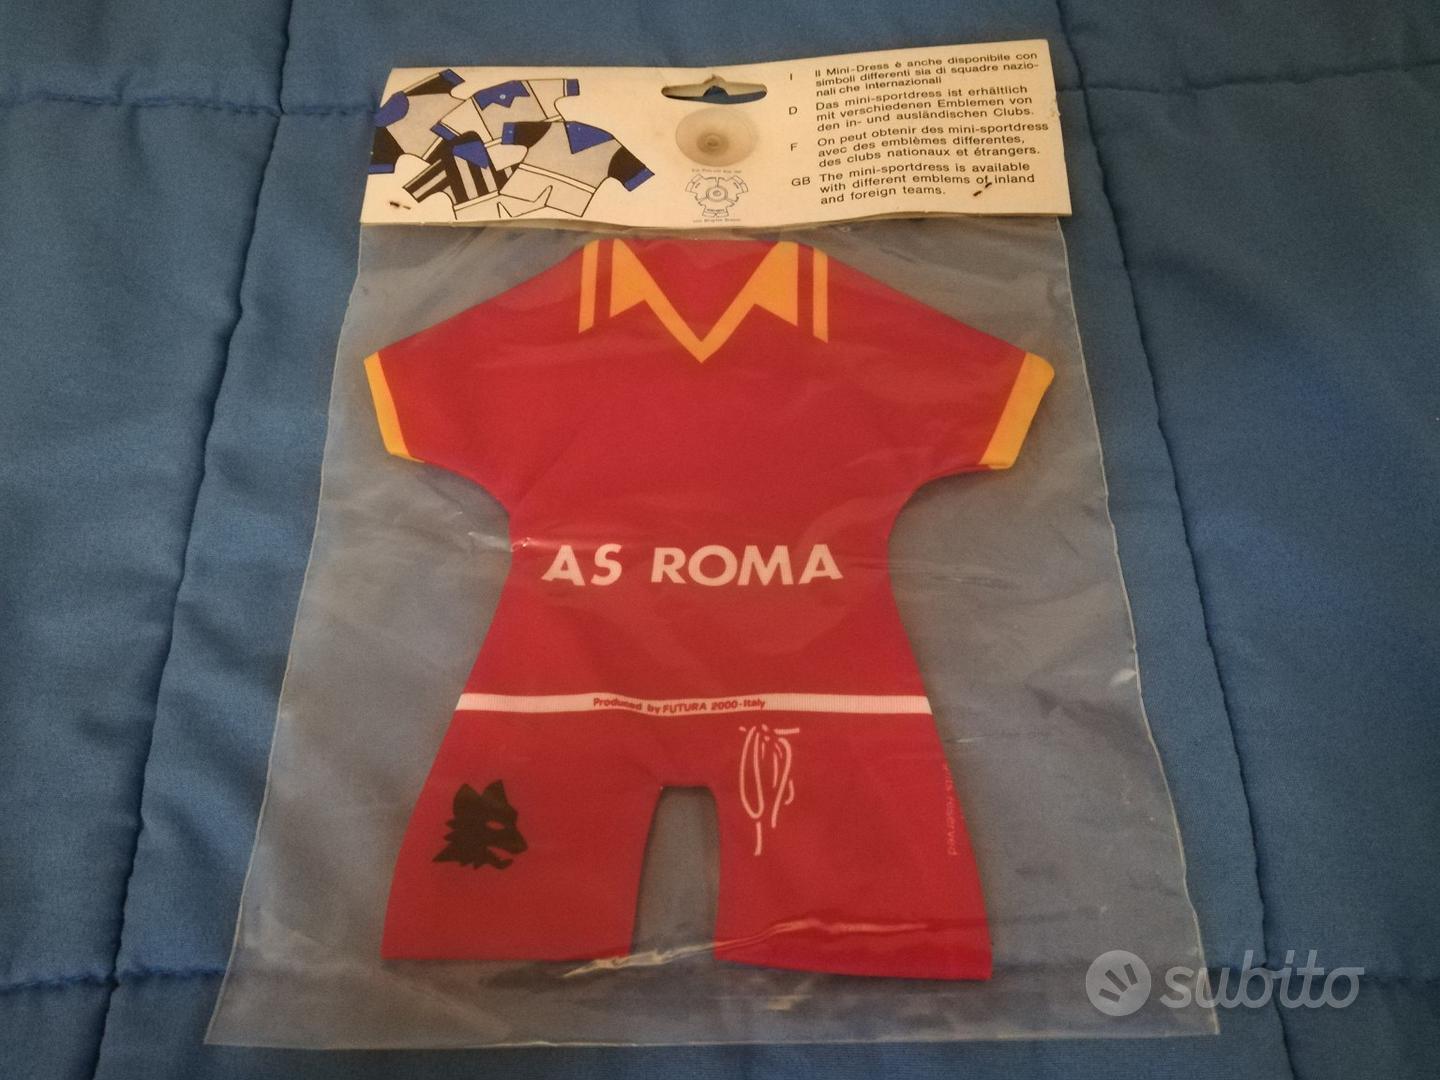 Maglia Calcio Mini Sport Dress Roma Gadget Nuovo - Collezionismo In vendita  a Milano